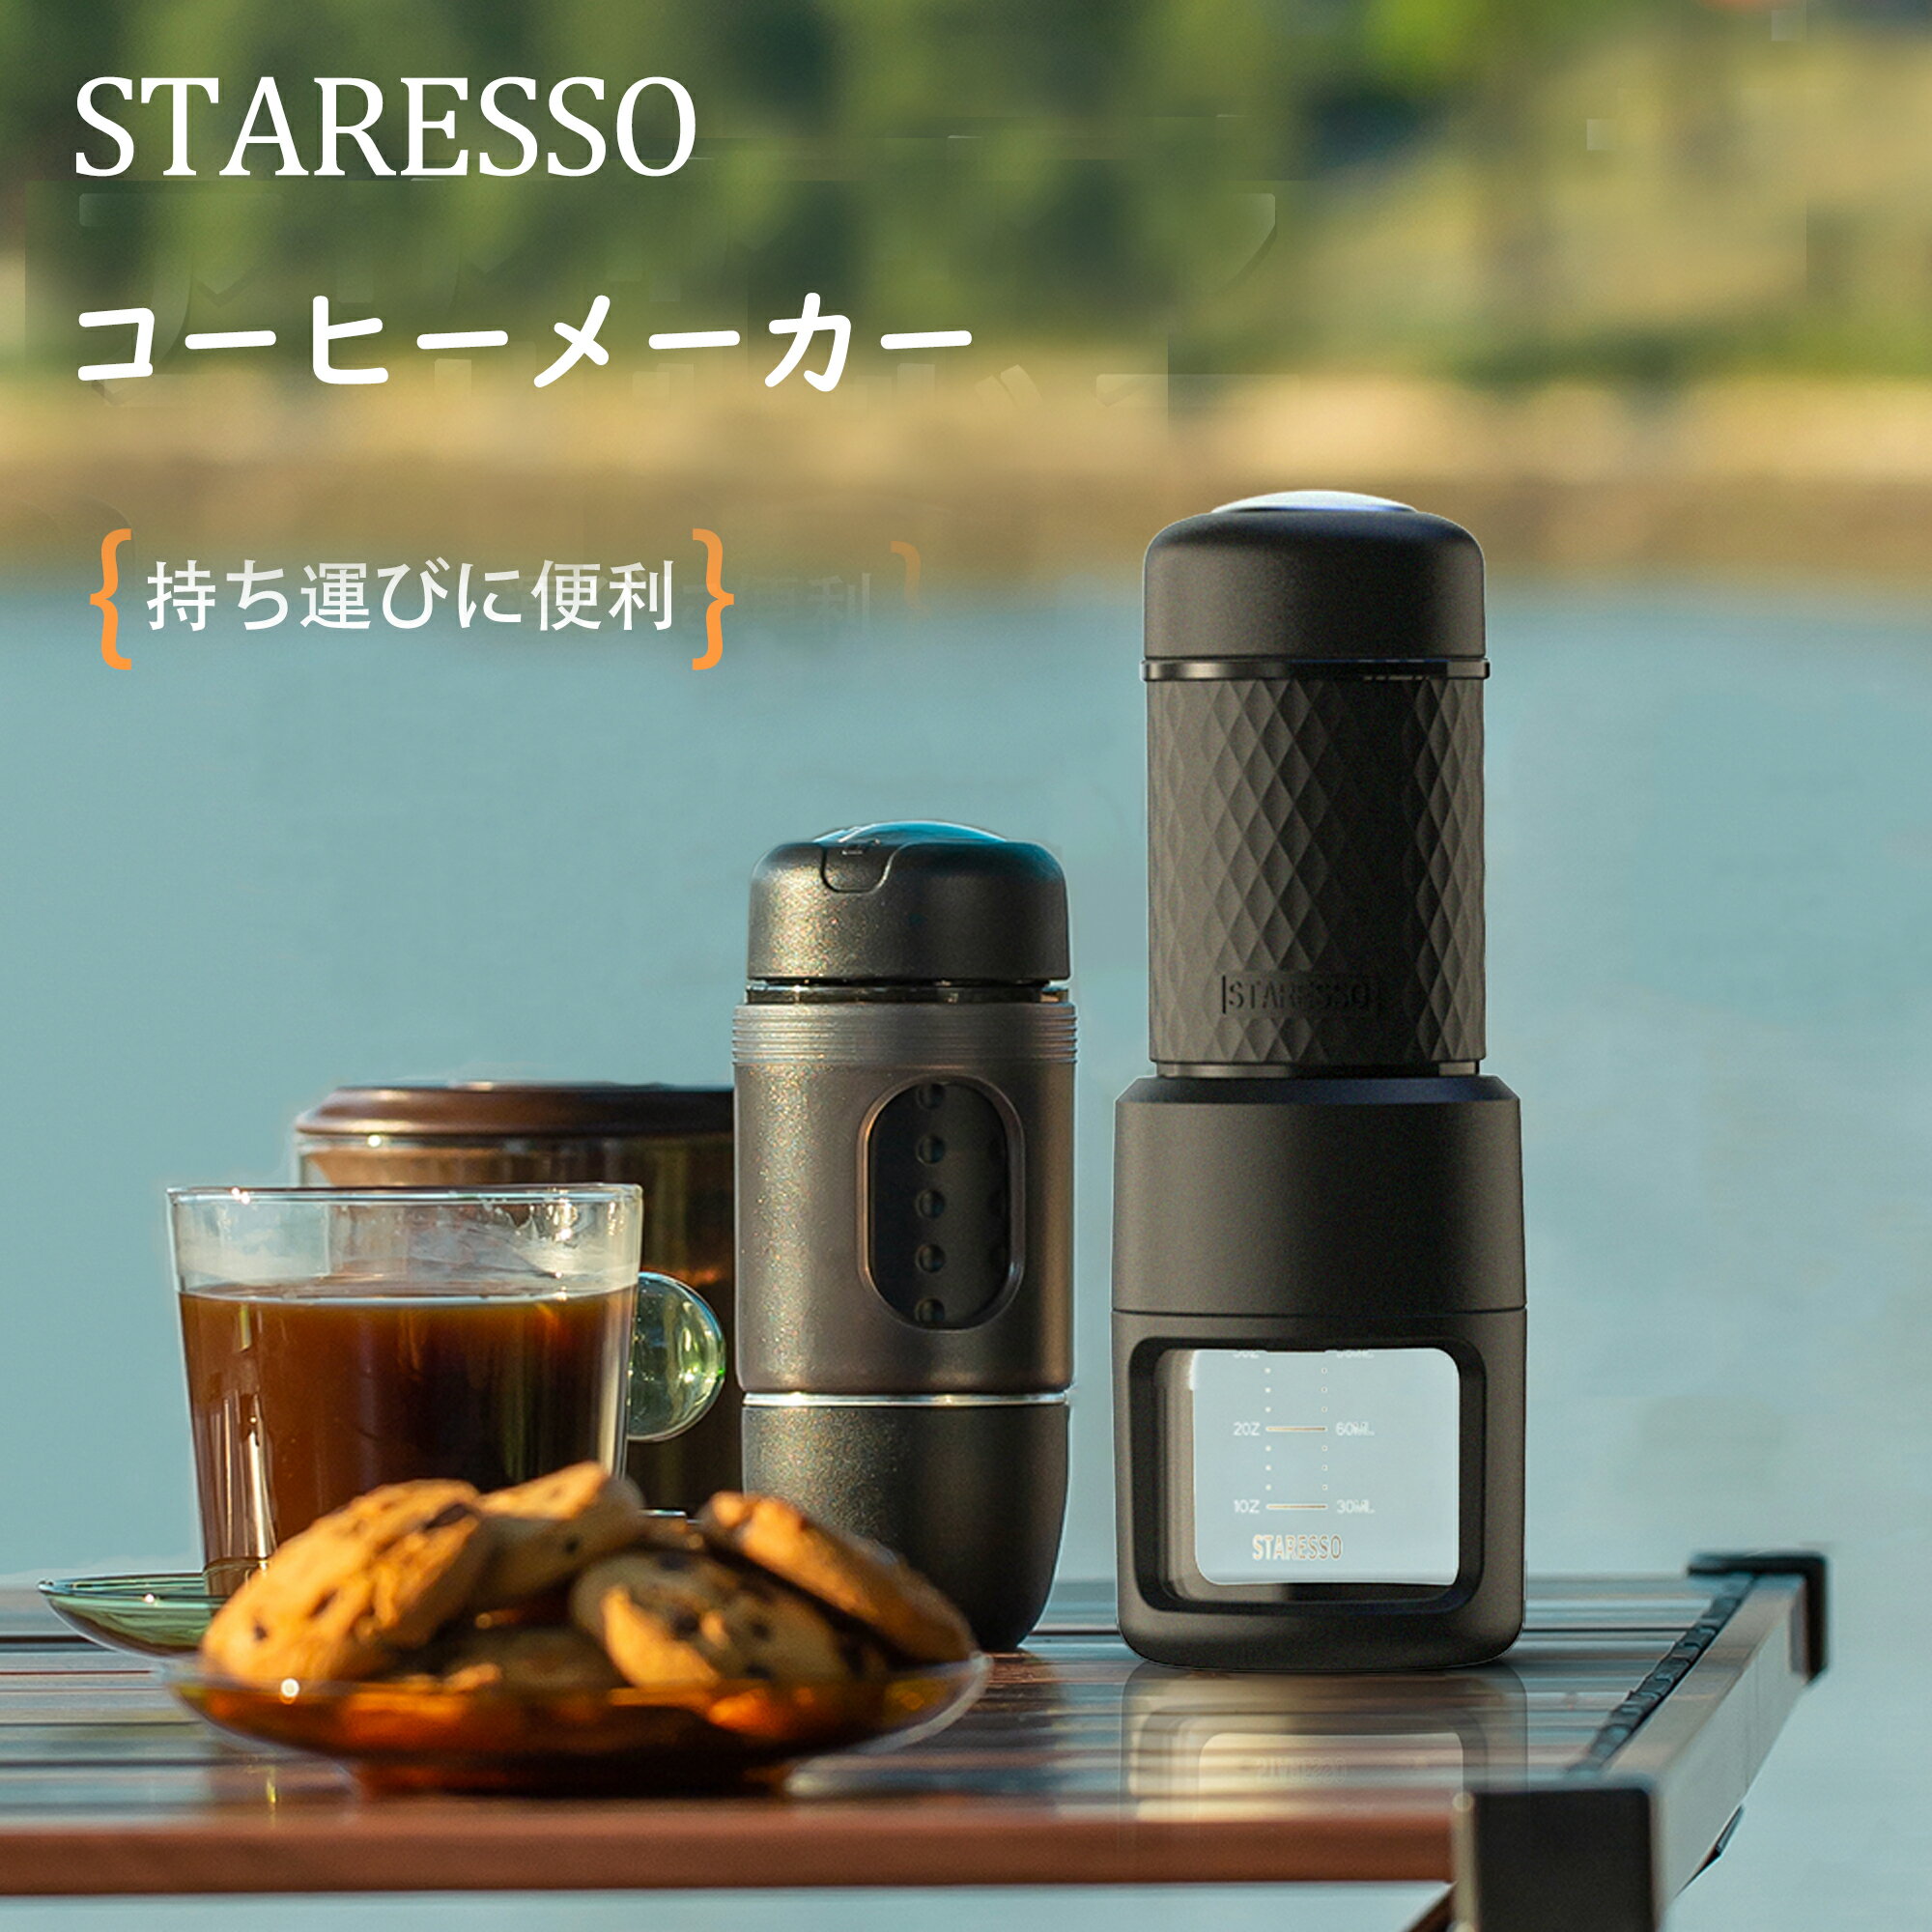 【★ P5！★】STARESSO コーヒーメーカー SP200 抽出率高 コーヒーメーカー 一人用 小型 手動 旅行キャンプ用にぴったり 持ち歩けるコーヒーマシン